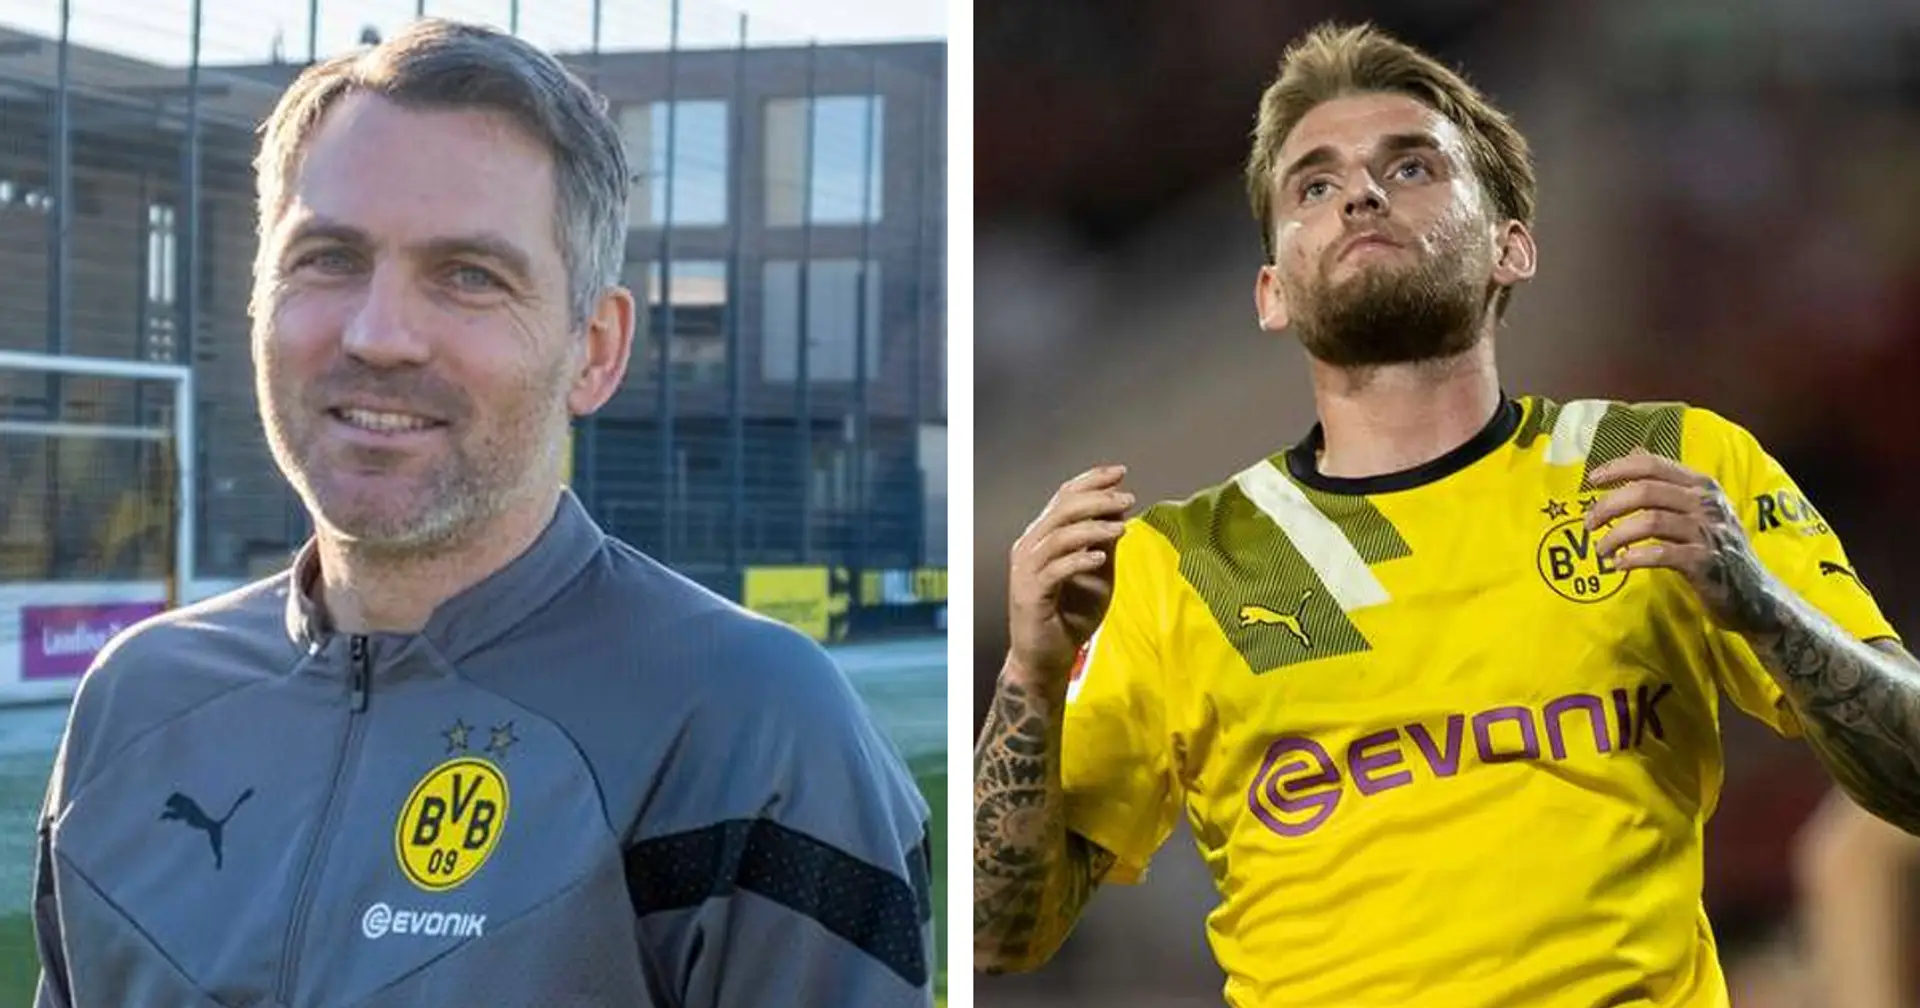 U23-Trainer über Pohlmann: "Er hat bei uns nichts mehr zu suchen"